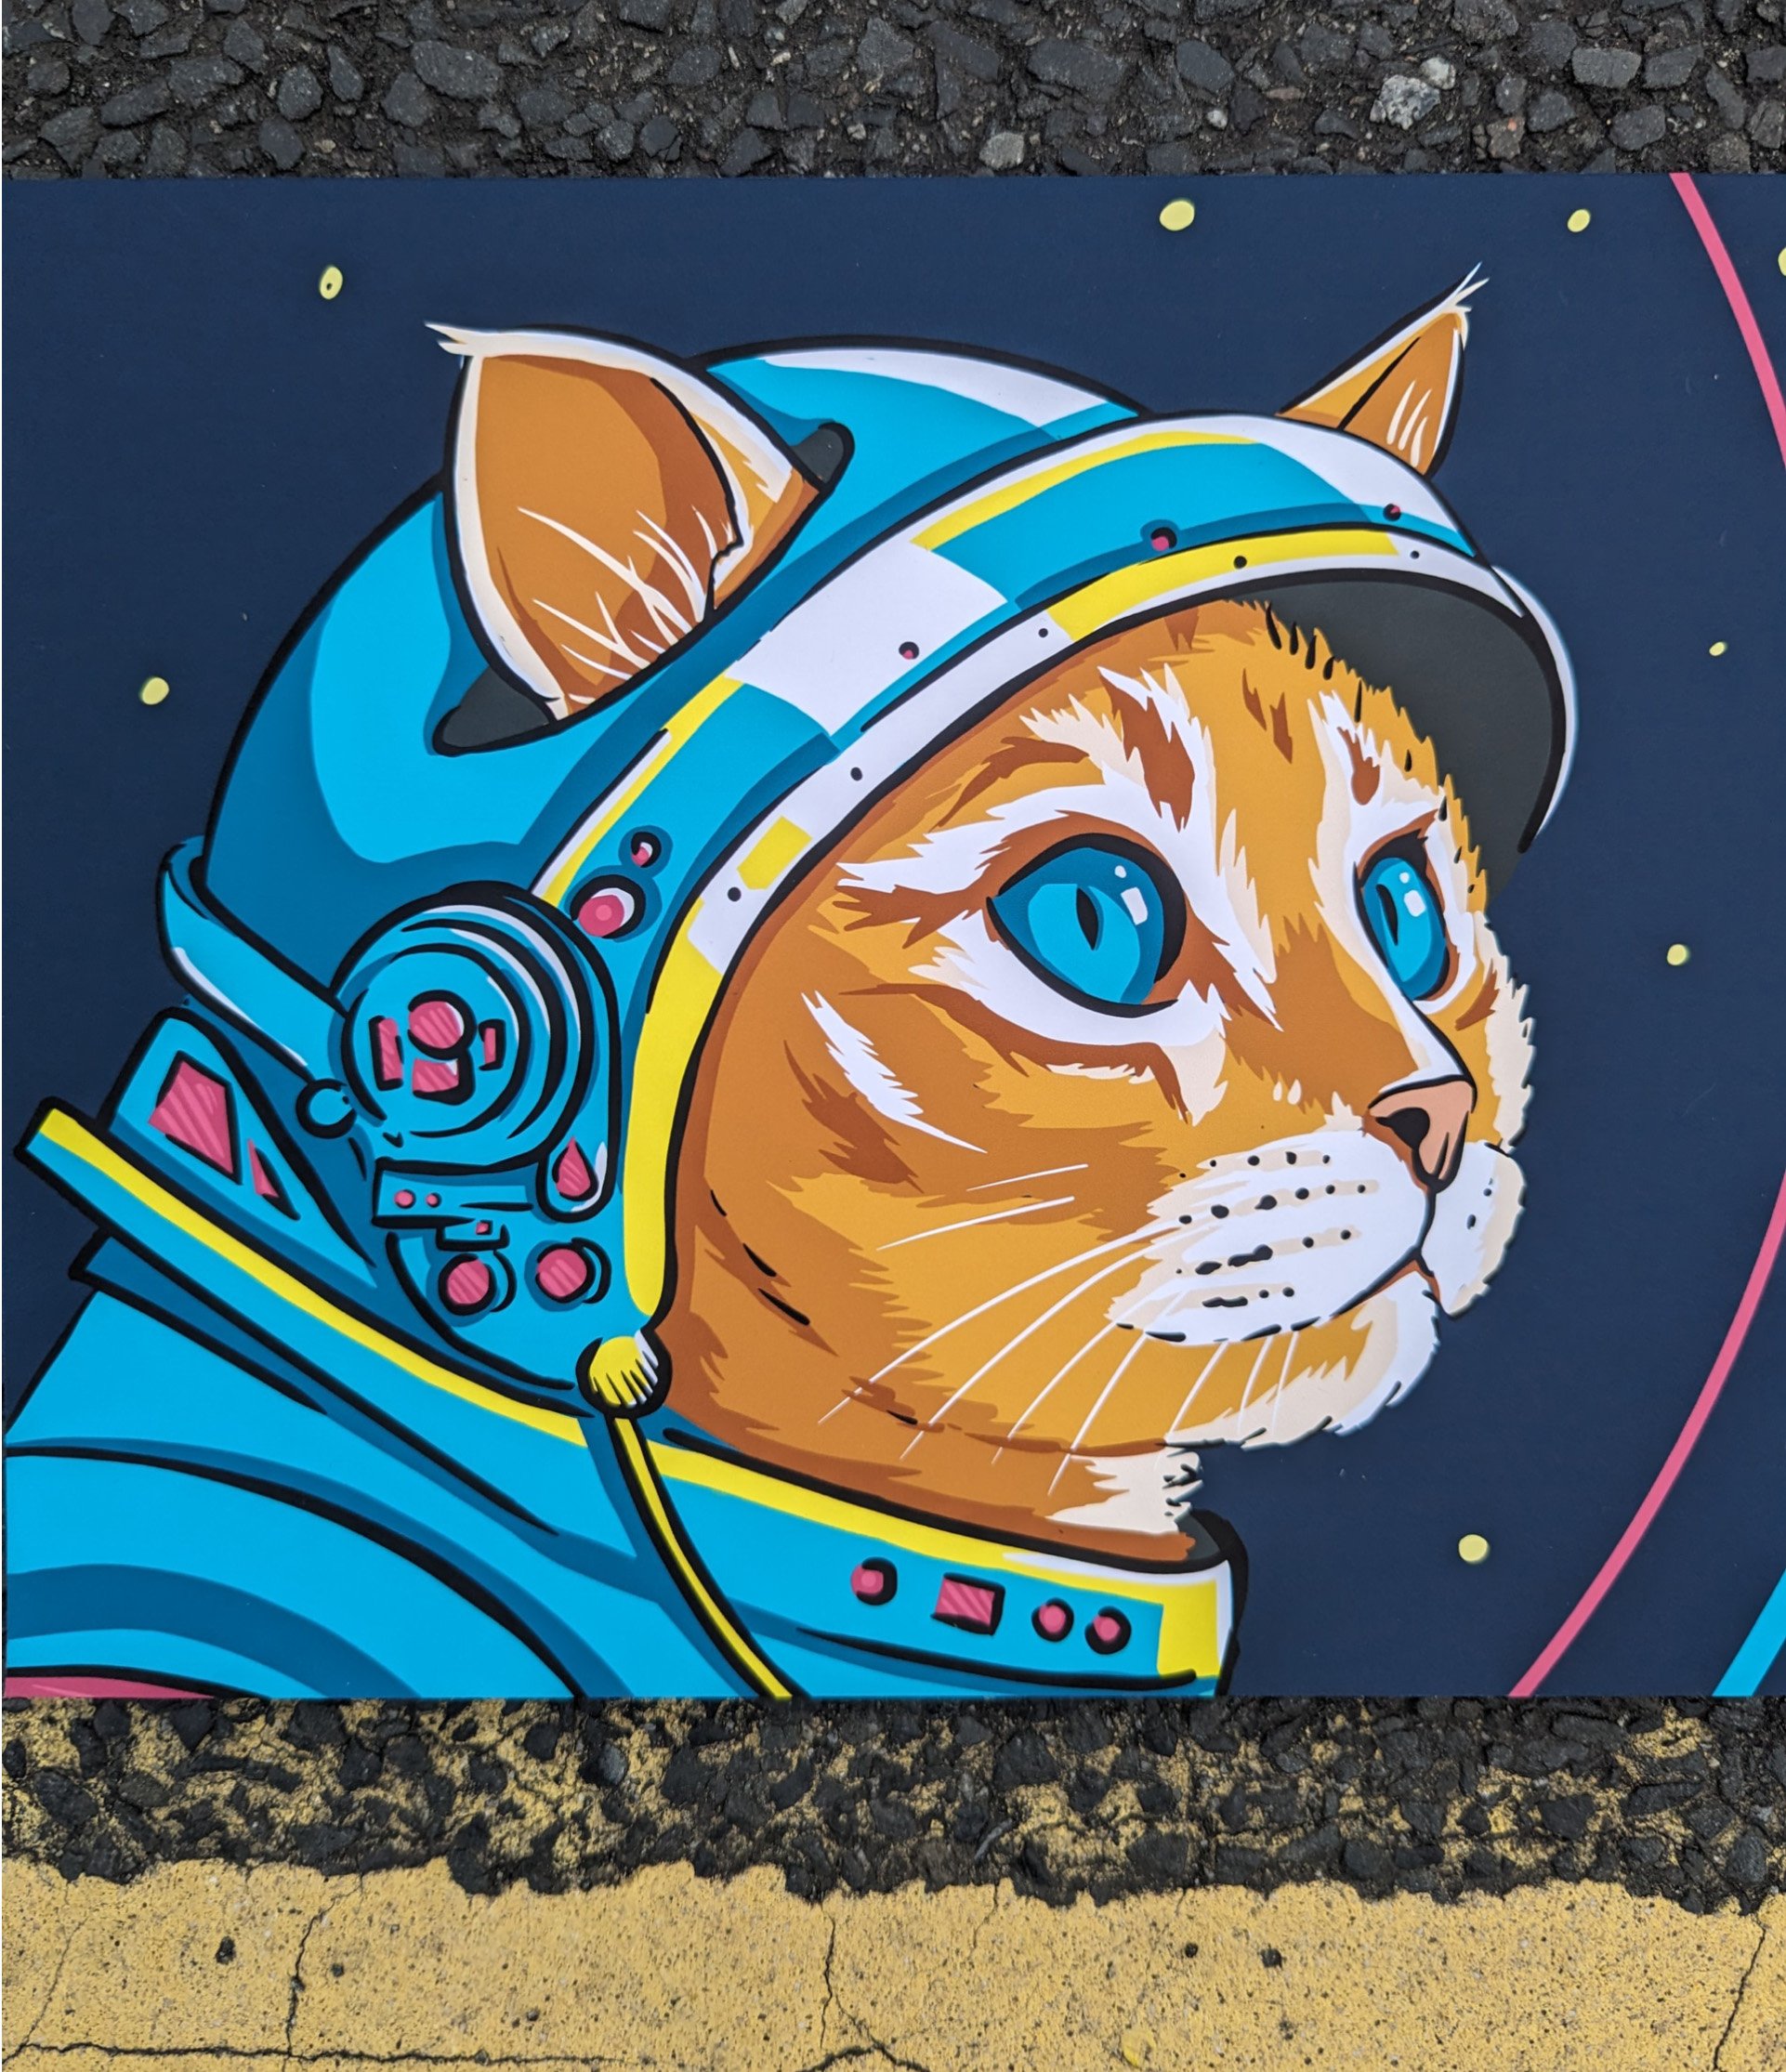 Space kitty ginger for website.jpg